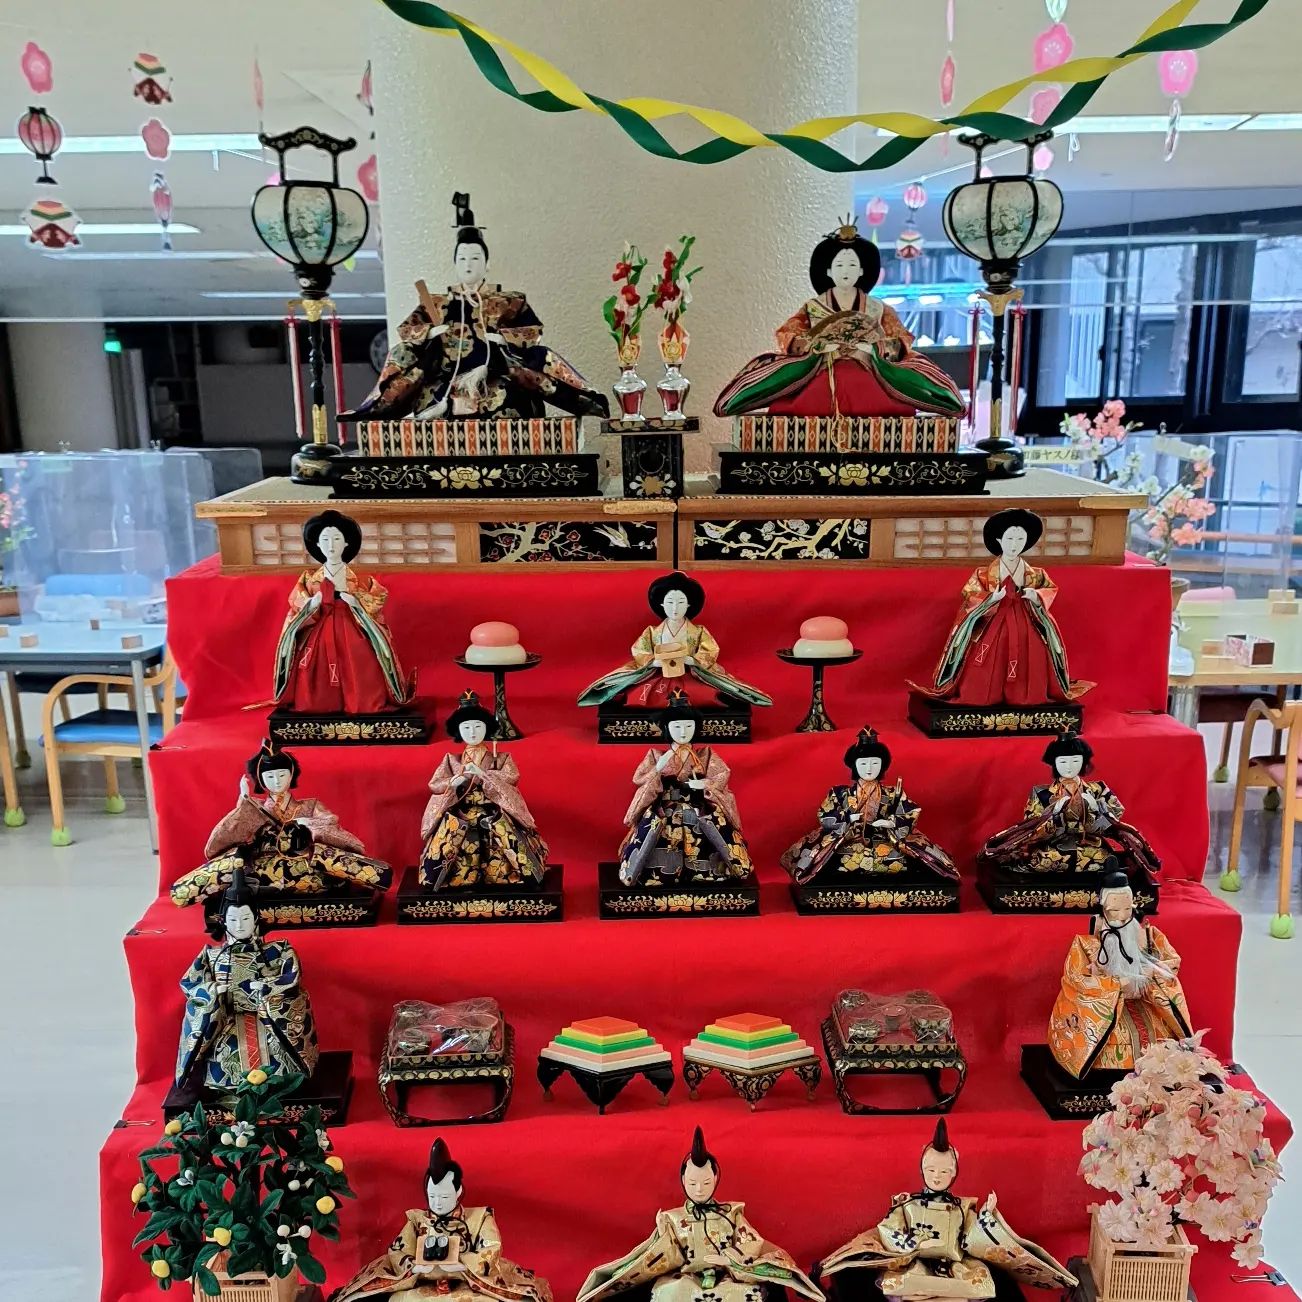 ひなまつり　お雛様を飾り付けいたしました～利用者さんから『雛祭りは、いくつになっても嬉しくなるね…』とのお話もありました。#ウエルハイムヨコゼ #横瀬デイサービスセンター #雛祭り #秩父 #横瀬町